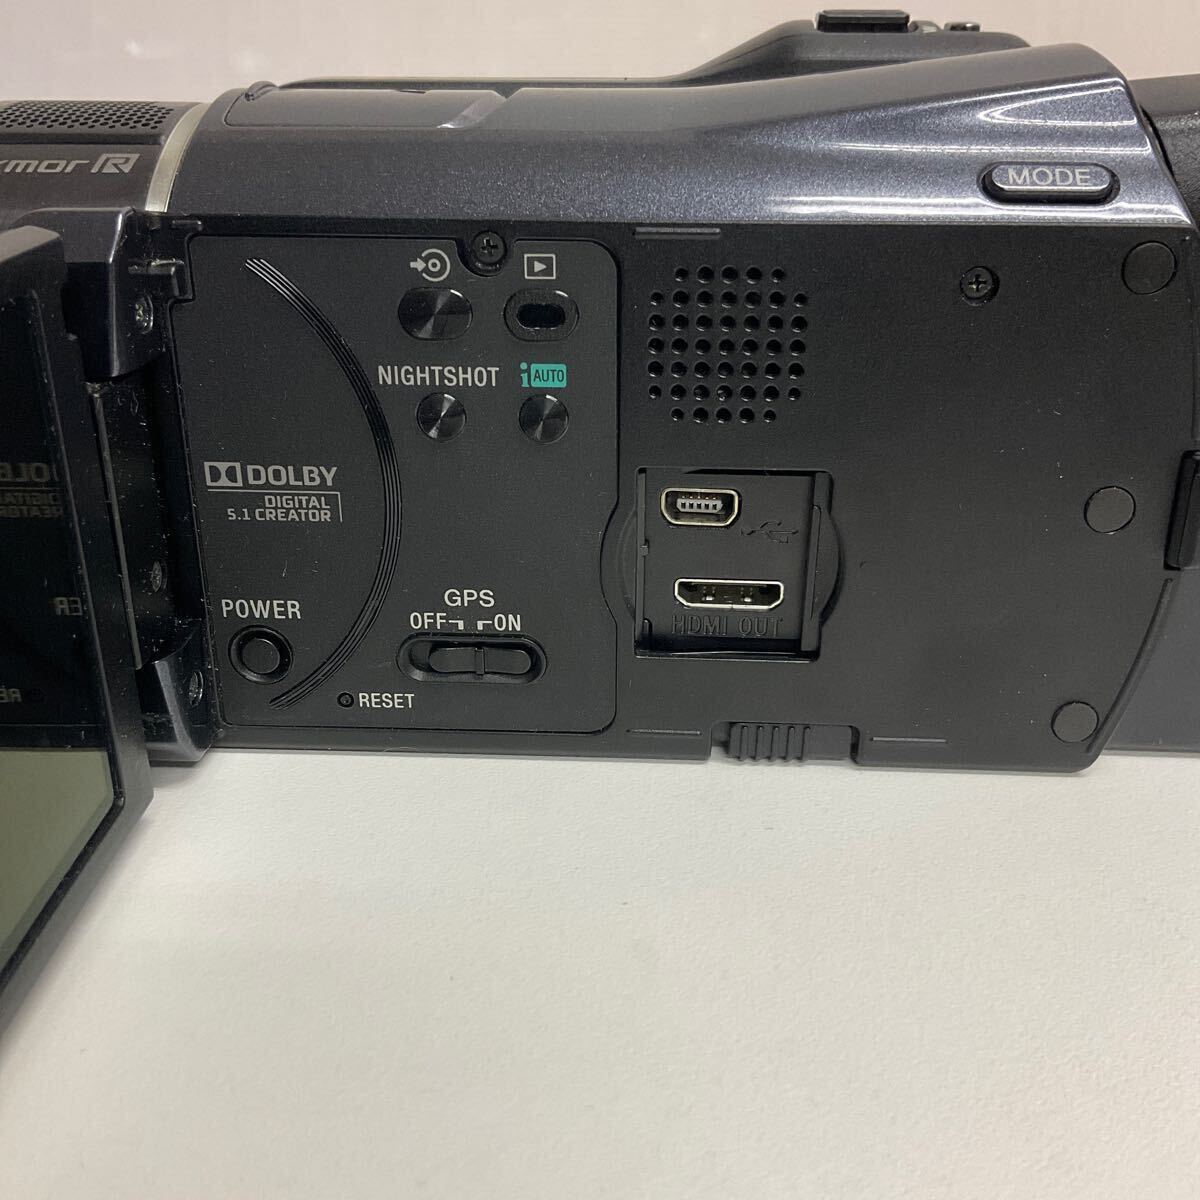 営YY528-60M SONY HANDYCAM ソニー ハンディカム デジタルビデオカメラ HDR-XR550V 2010年製 バッテリーあり 充電器無し通電動作未確認　